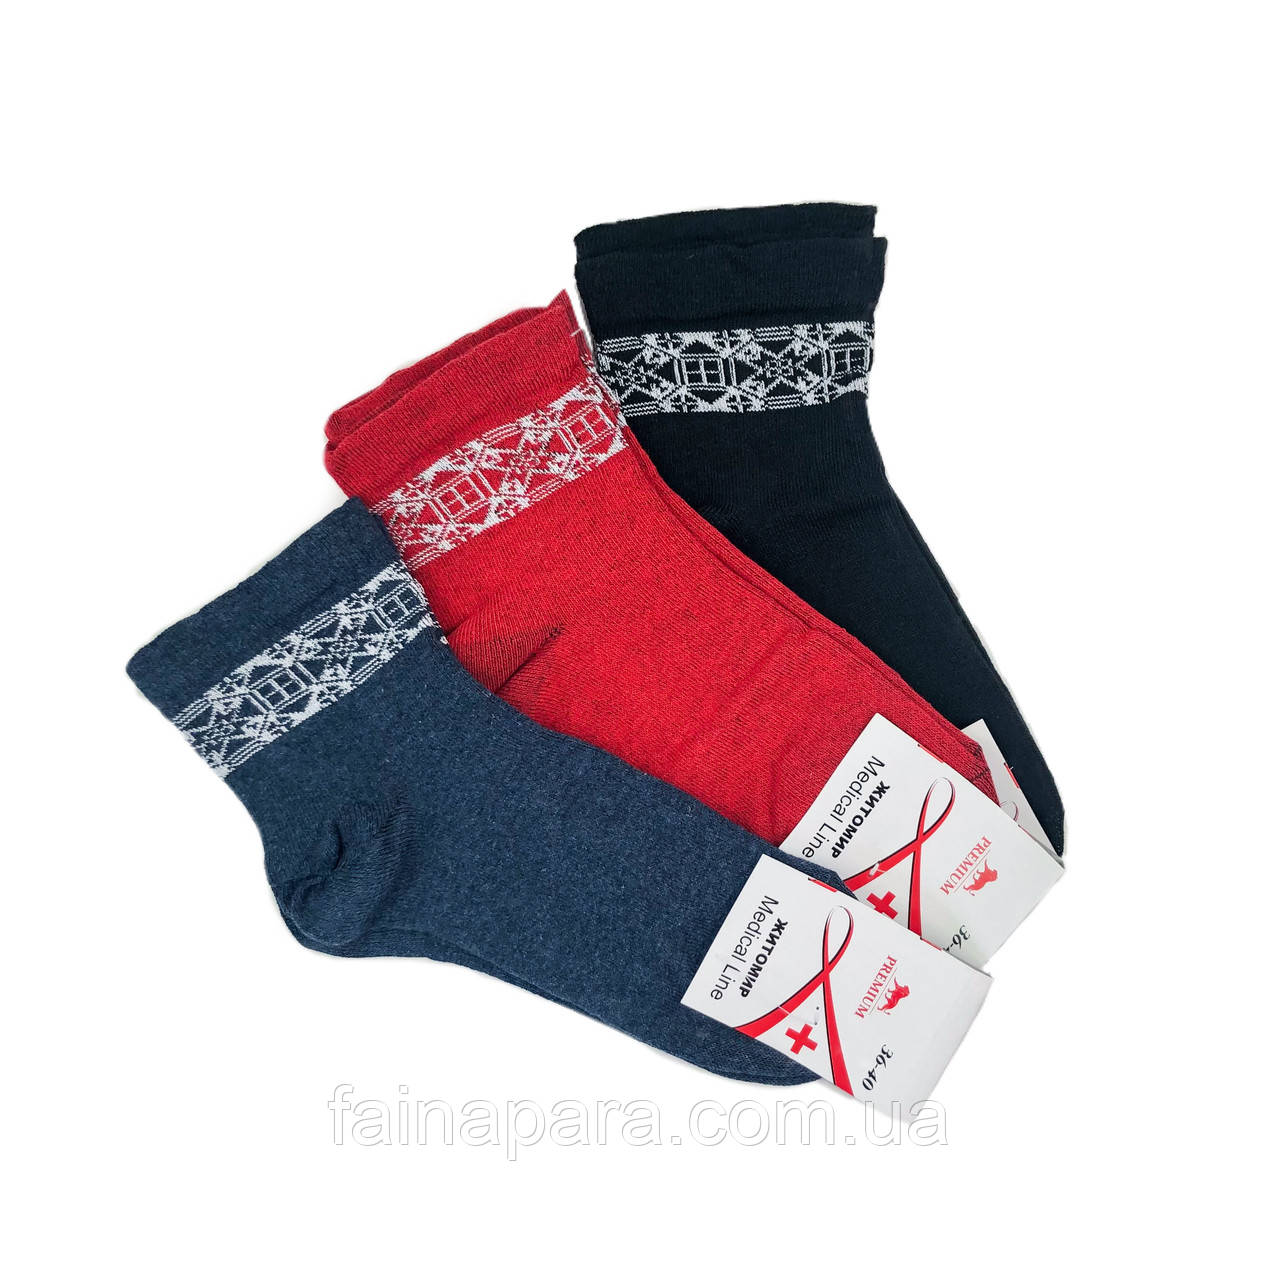 Жіночі шкарпетки з ослабленою гумкою Житомир